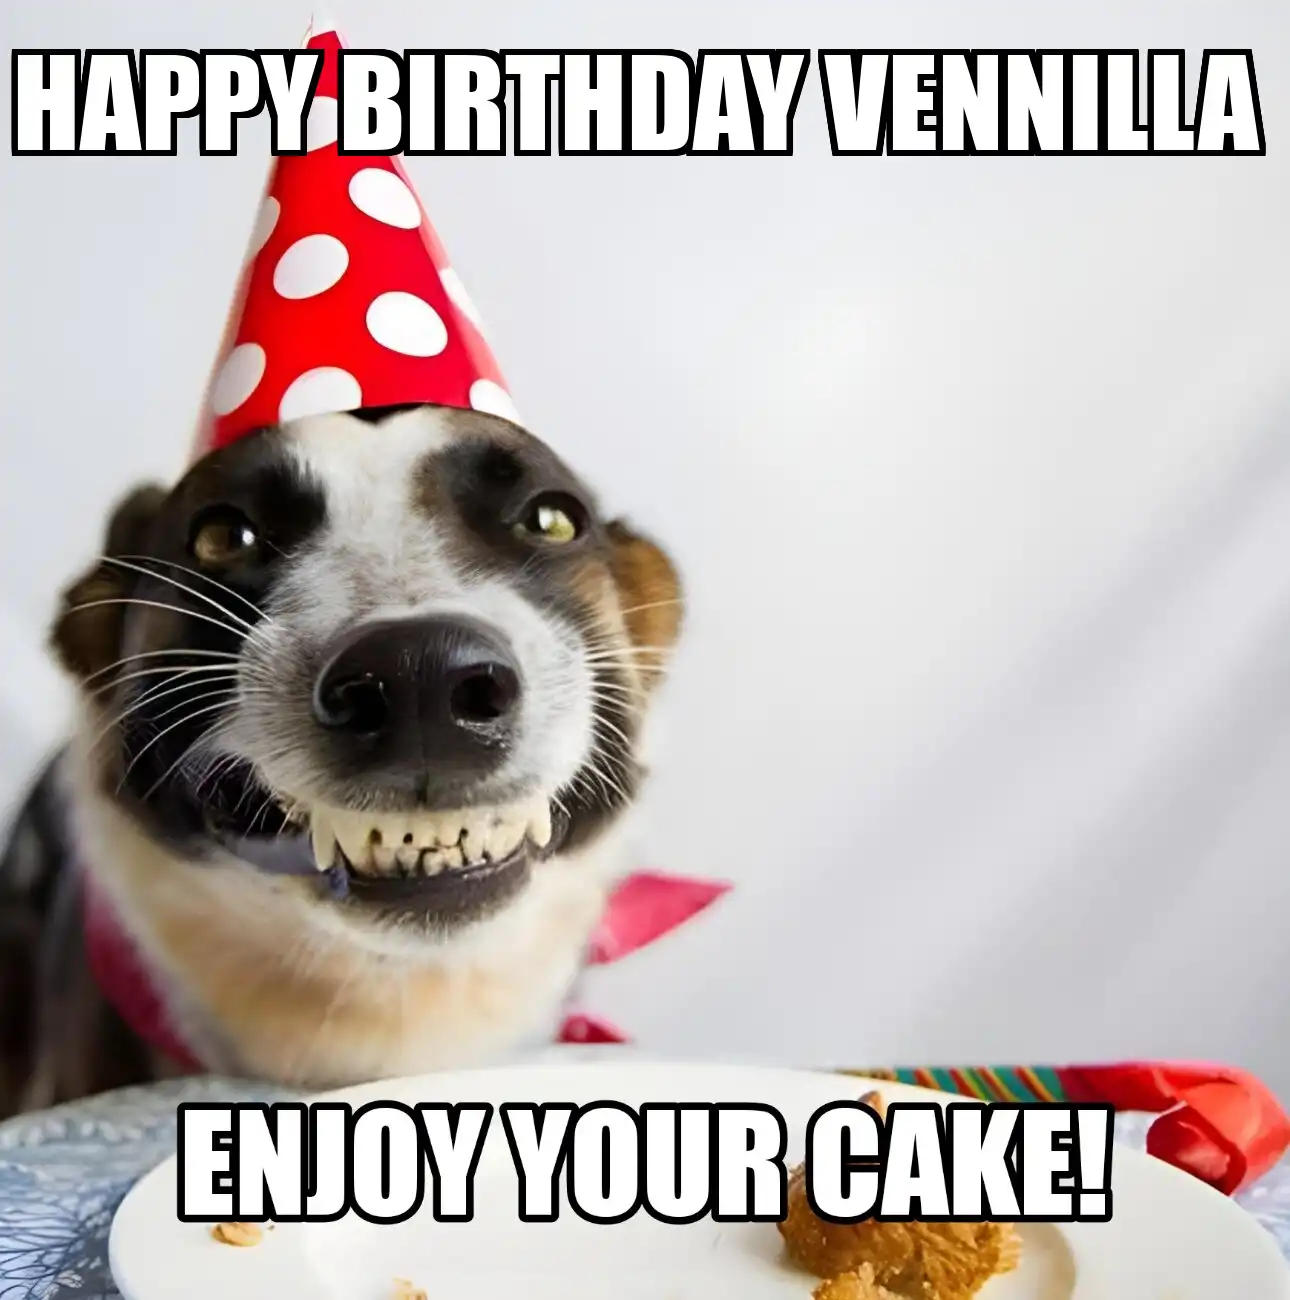 Happy Birthday Vennilla Enjoy Your Cake Dog Meme